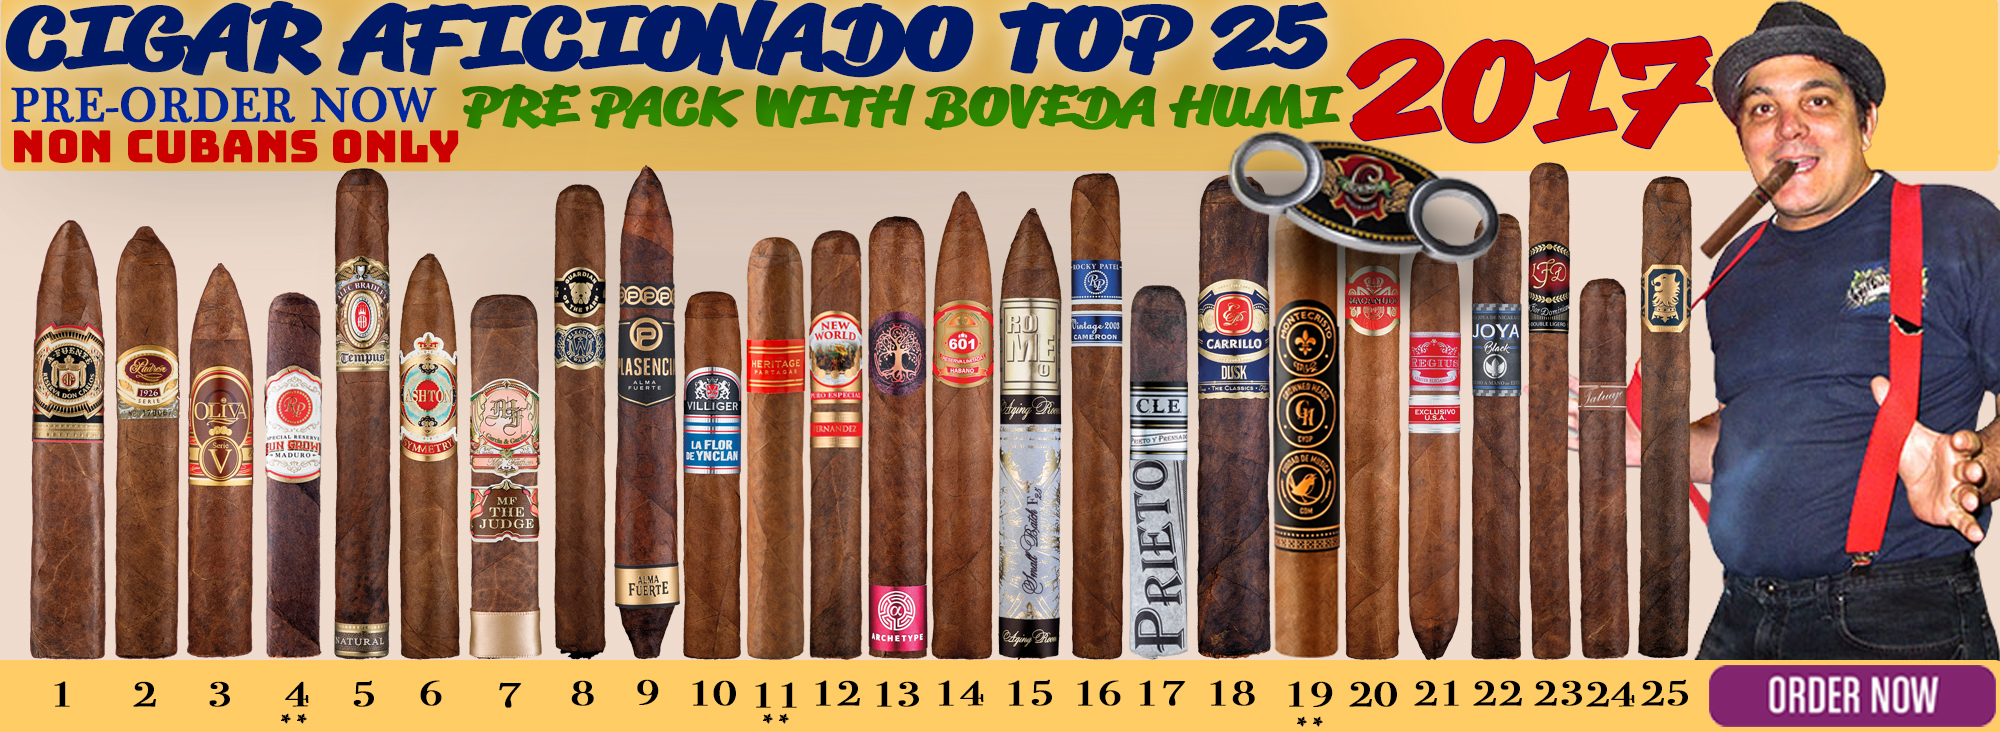 2017 Cigar Aficionado Top 25